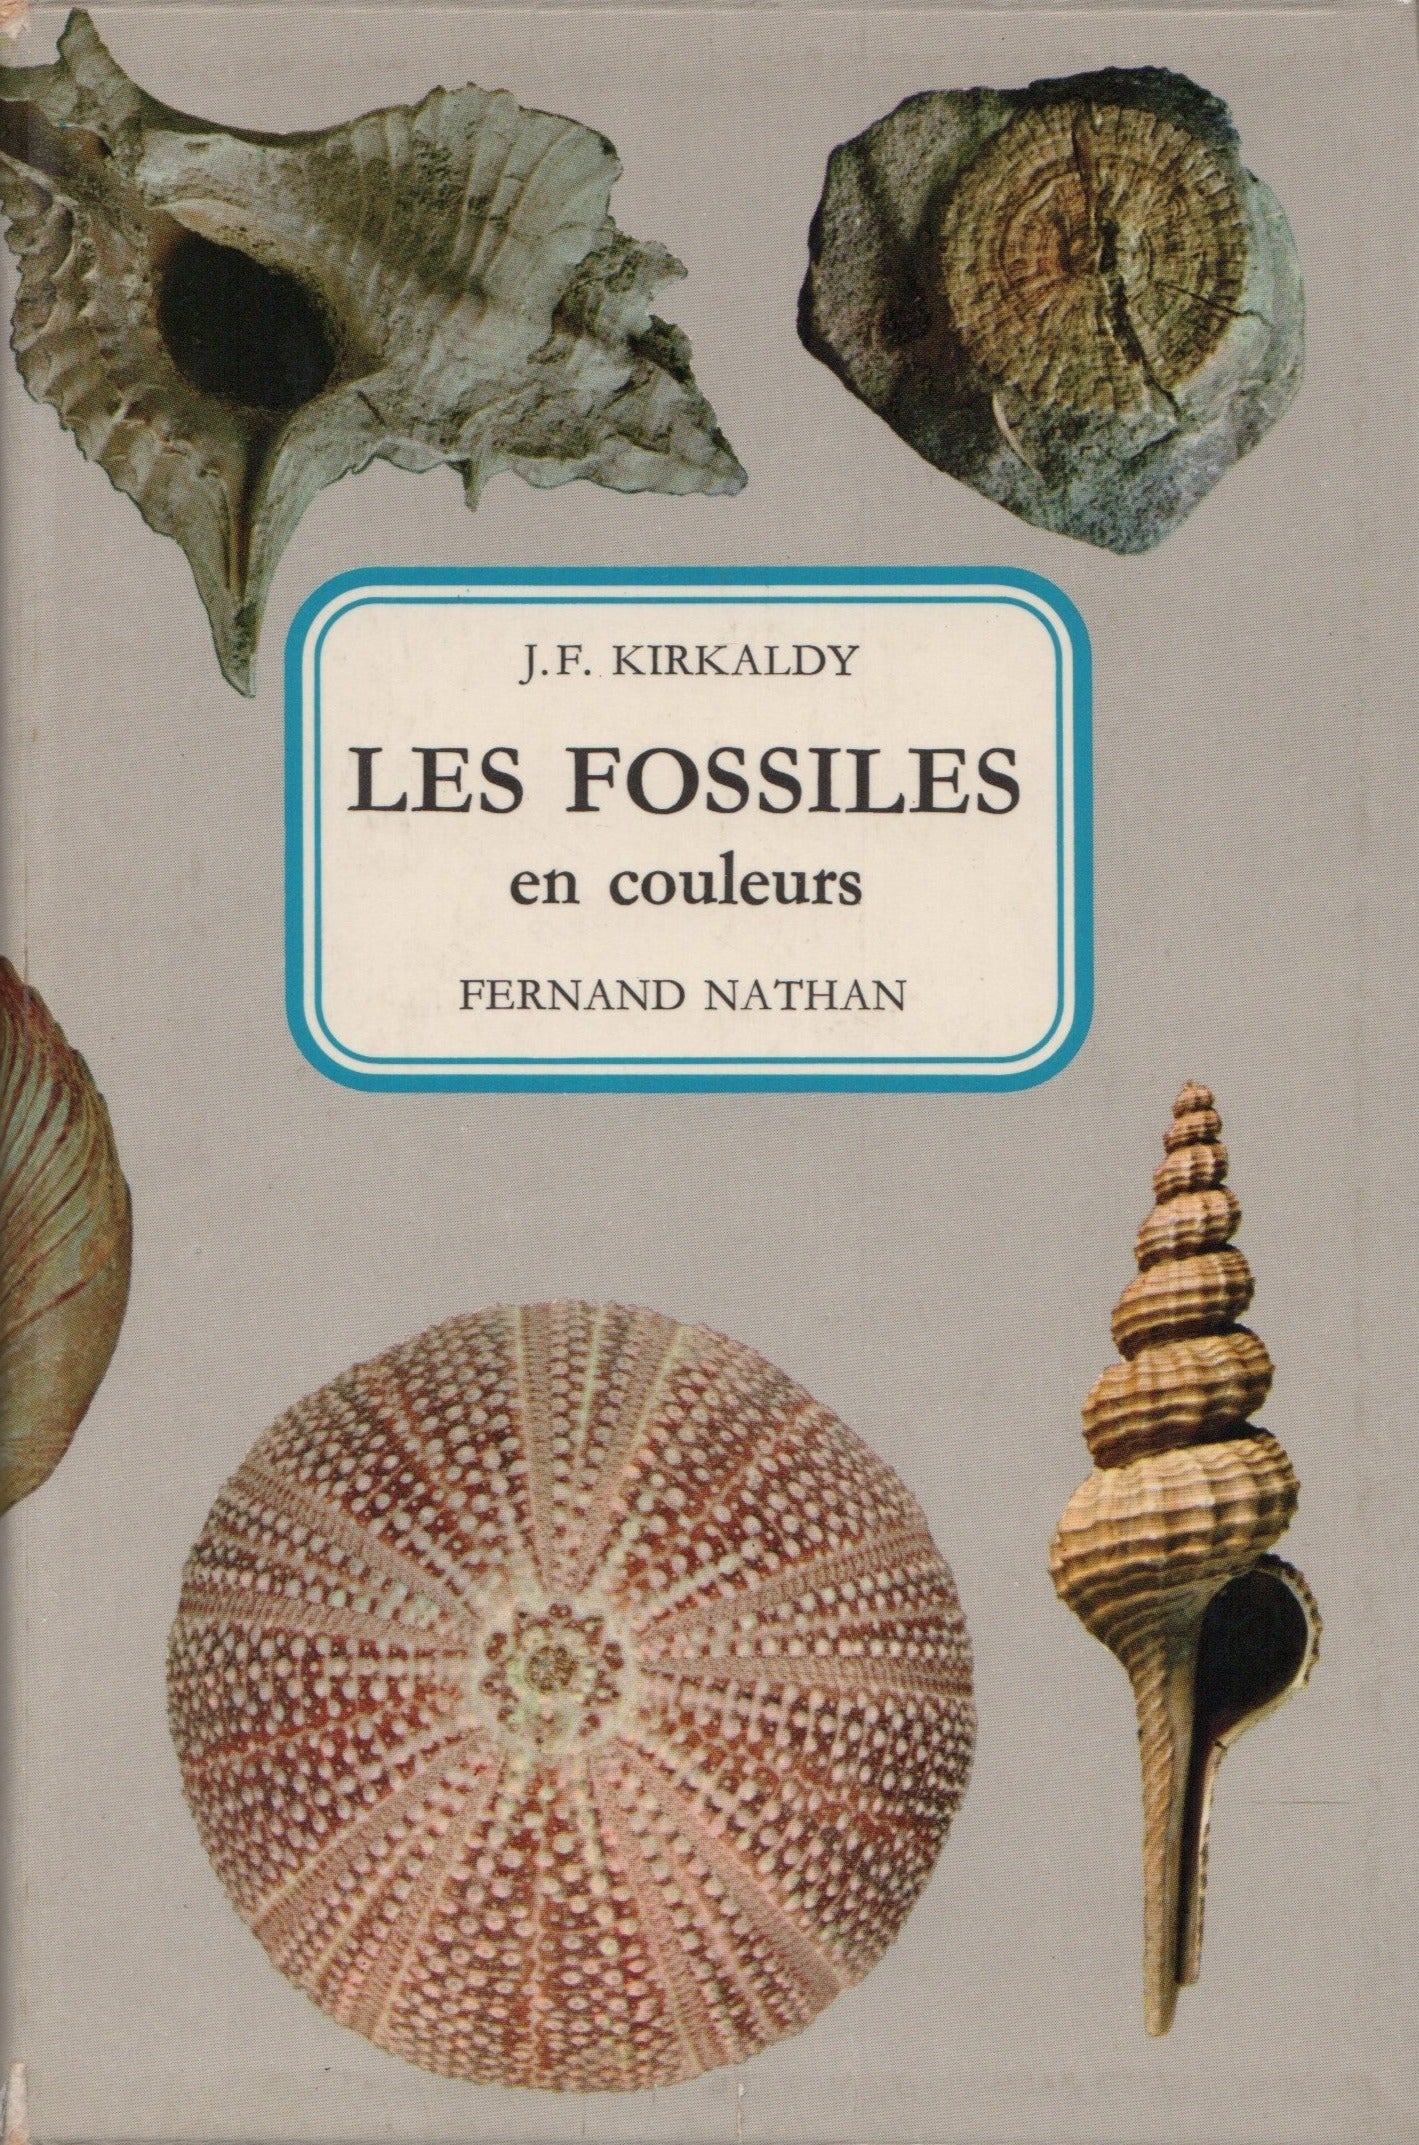 KIRKALDY, J. F. Fossiles en couleurs (Les)